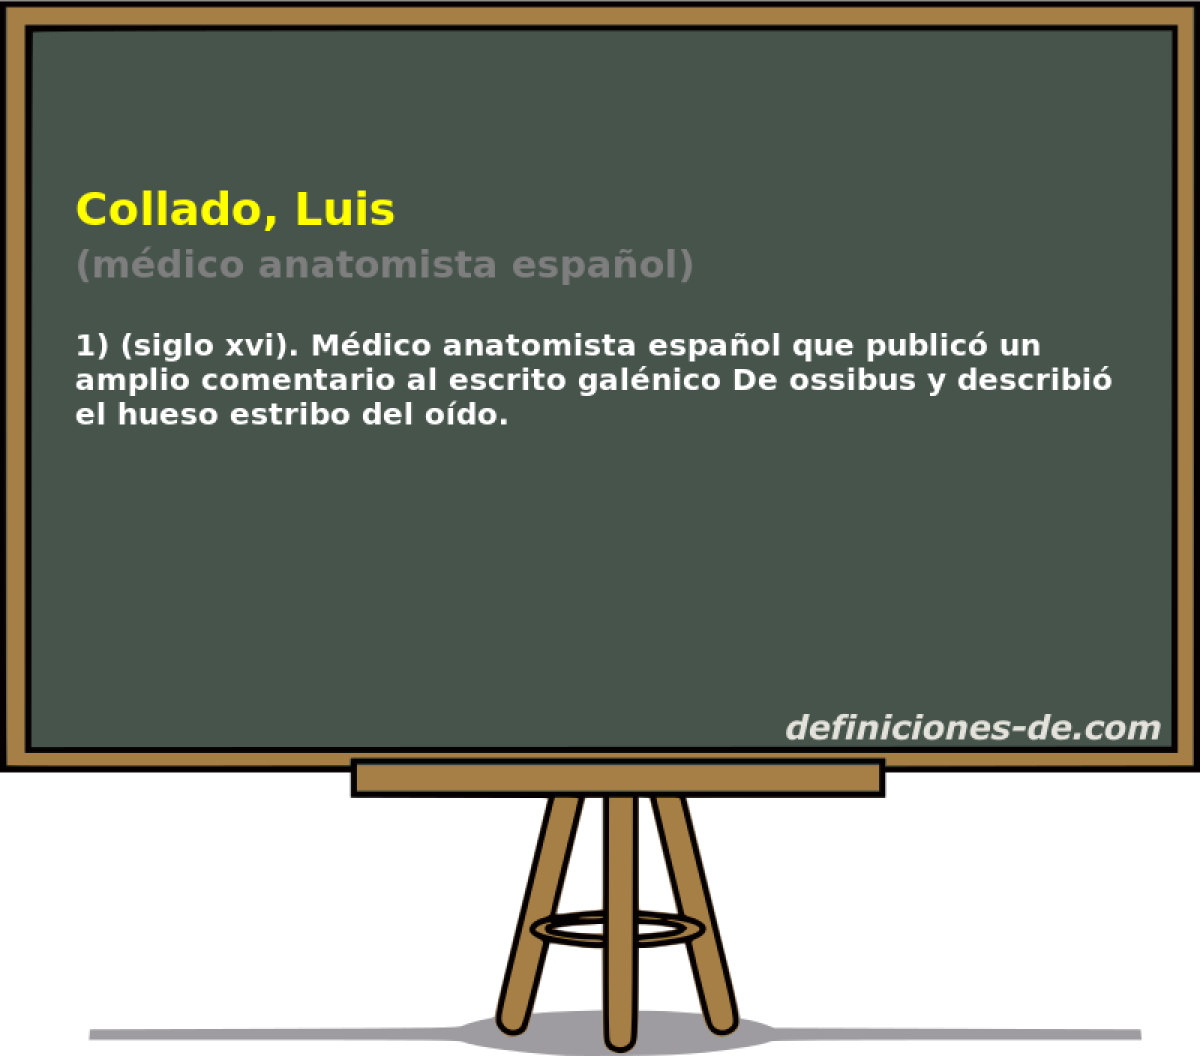 Collado, Luis (mdico anatomista espaol)